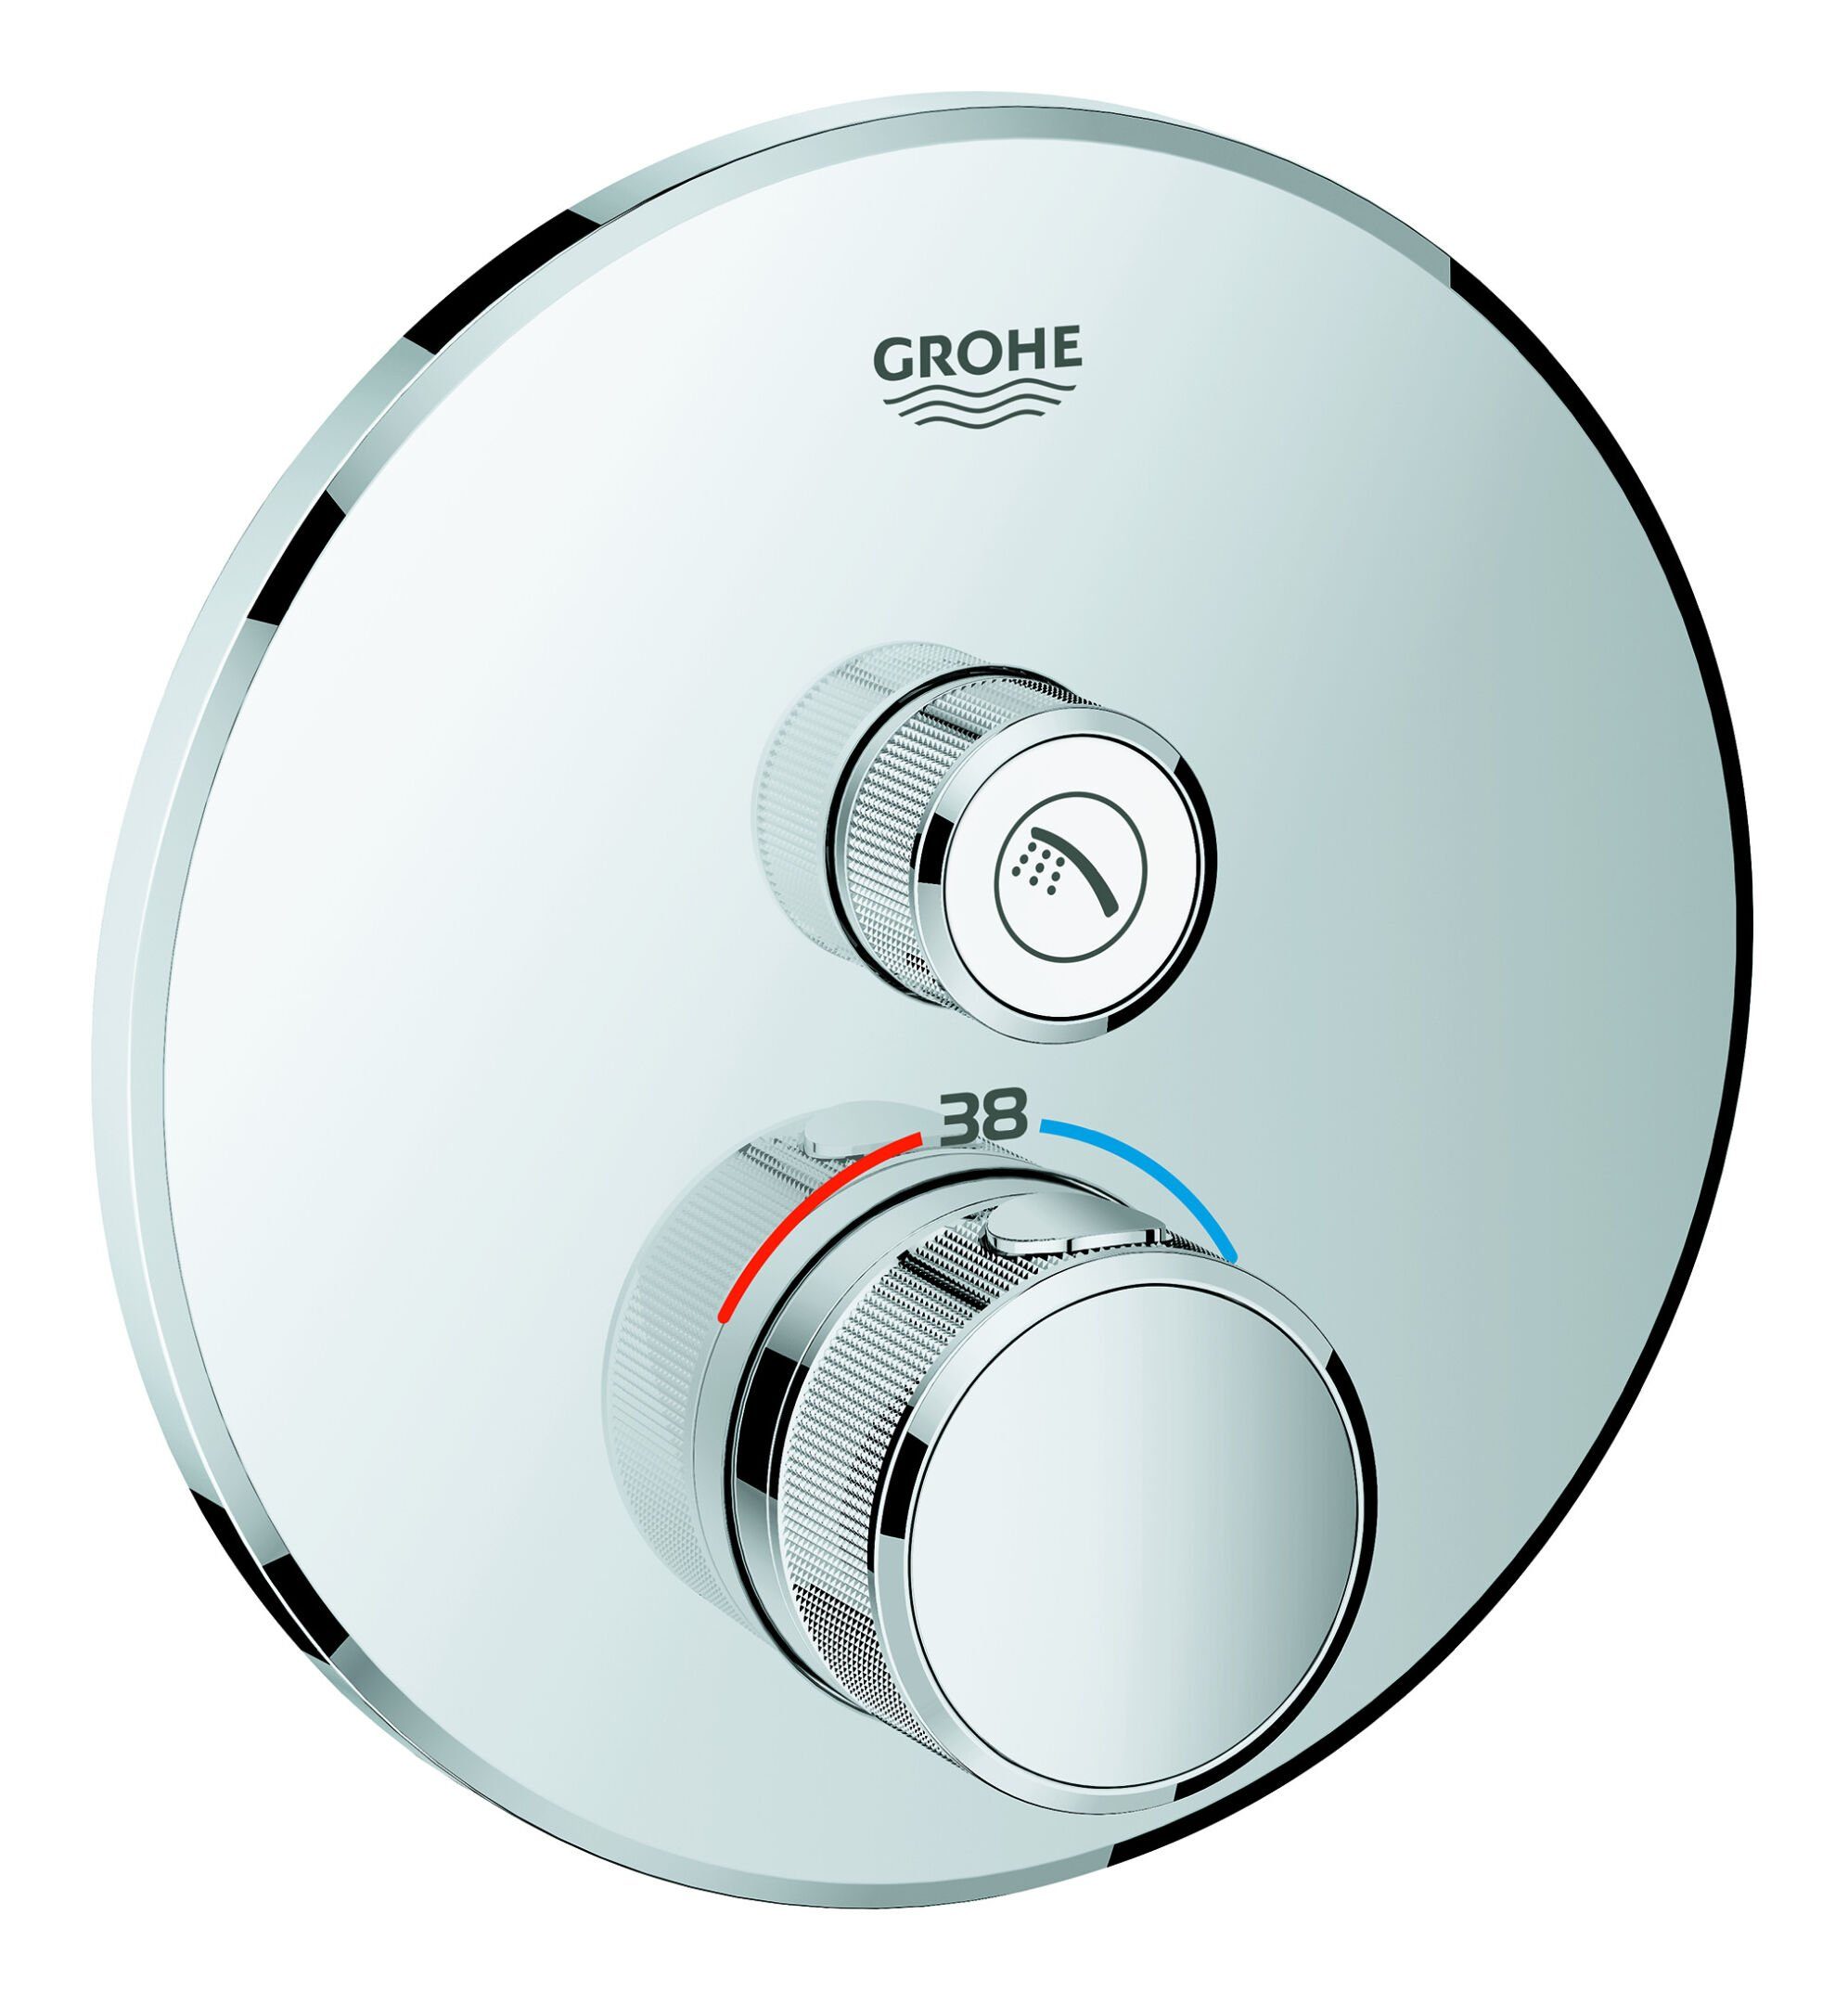 Chrom Design 1 Grohe Thermostat Absperrventil - Grohtherm SmartControl rund mit Unterputzarmatur